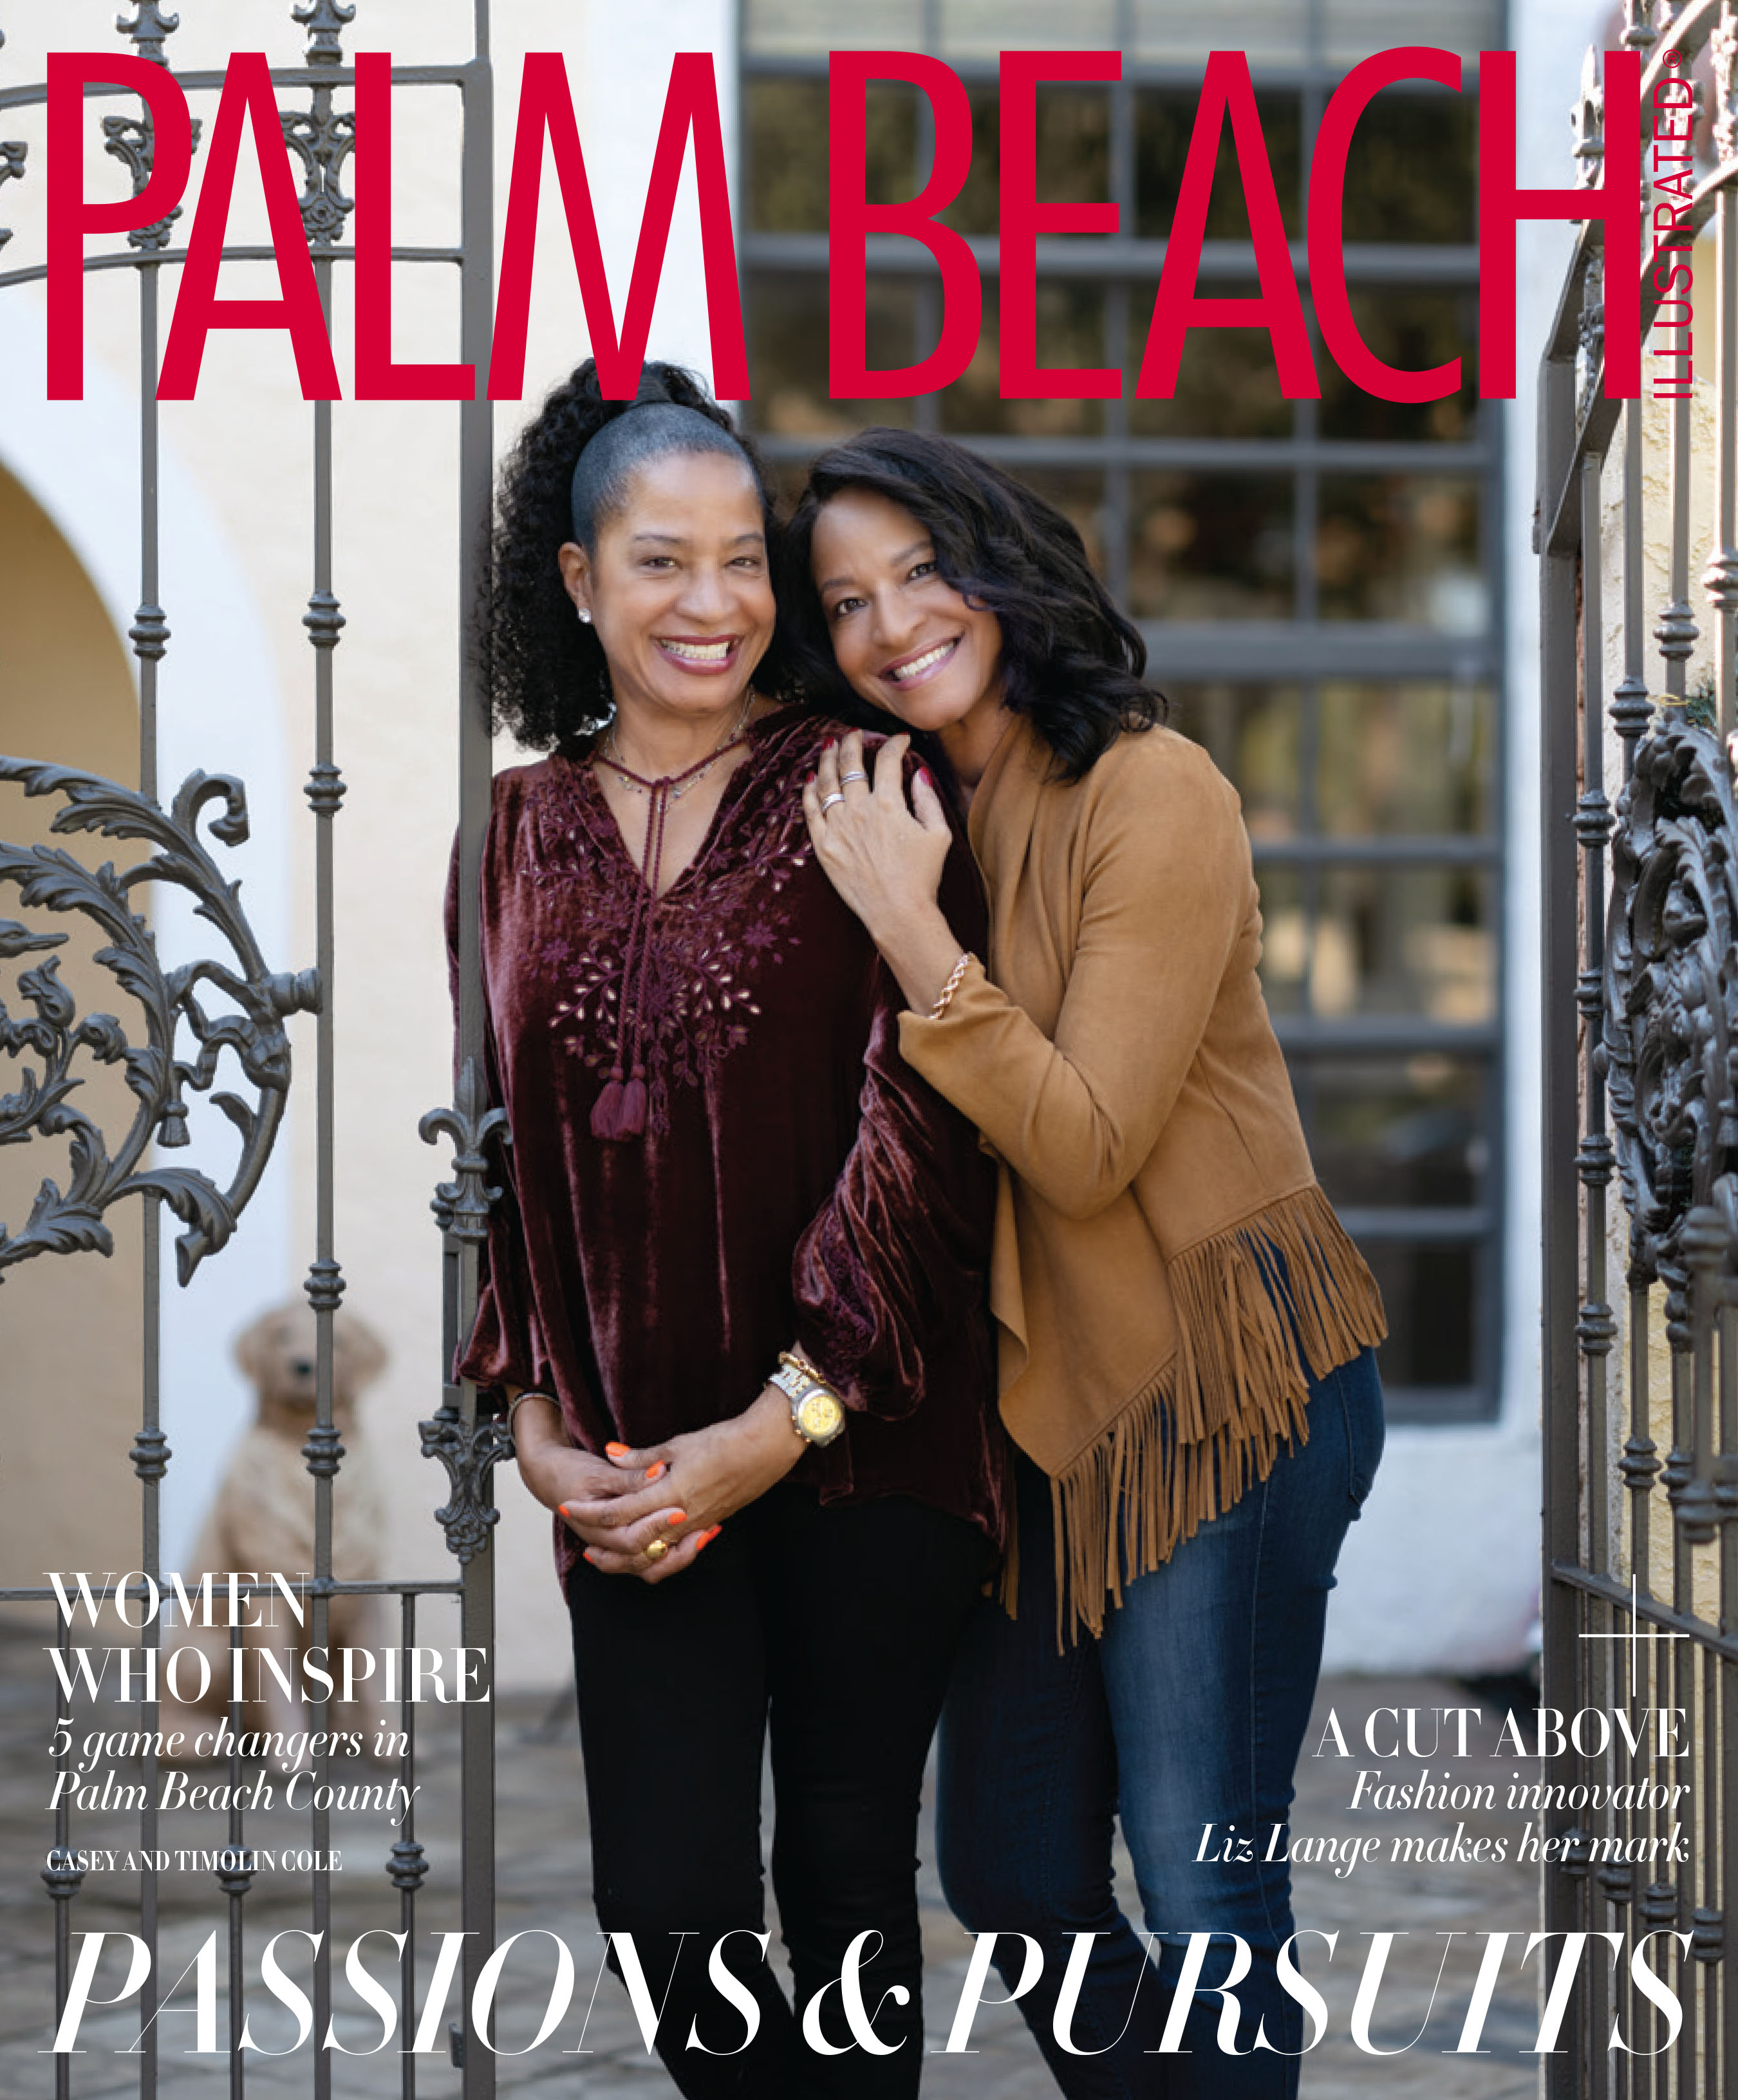 Steven Martine | West Palm Beach portraits published COVER PBI